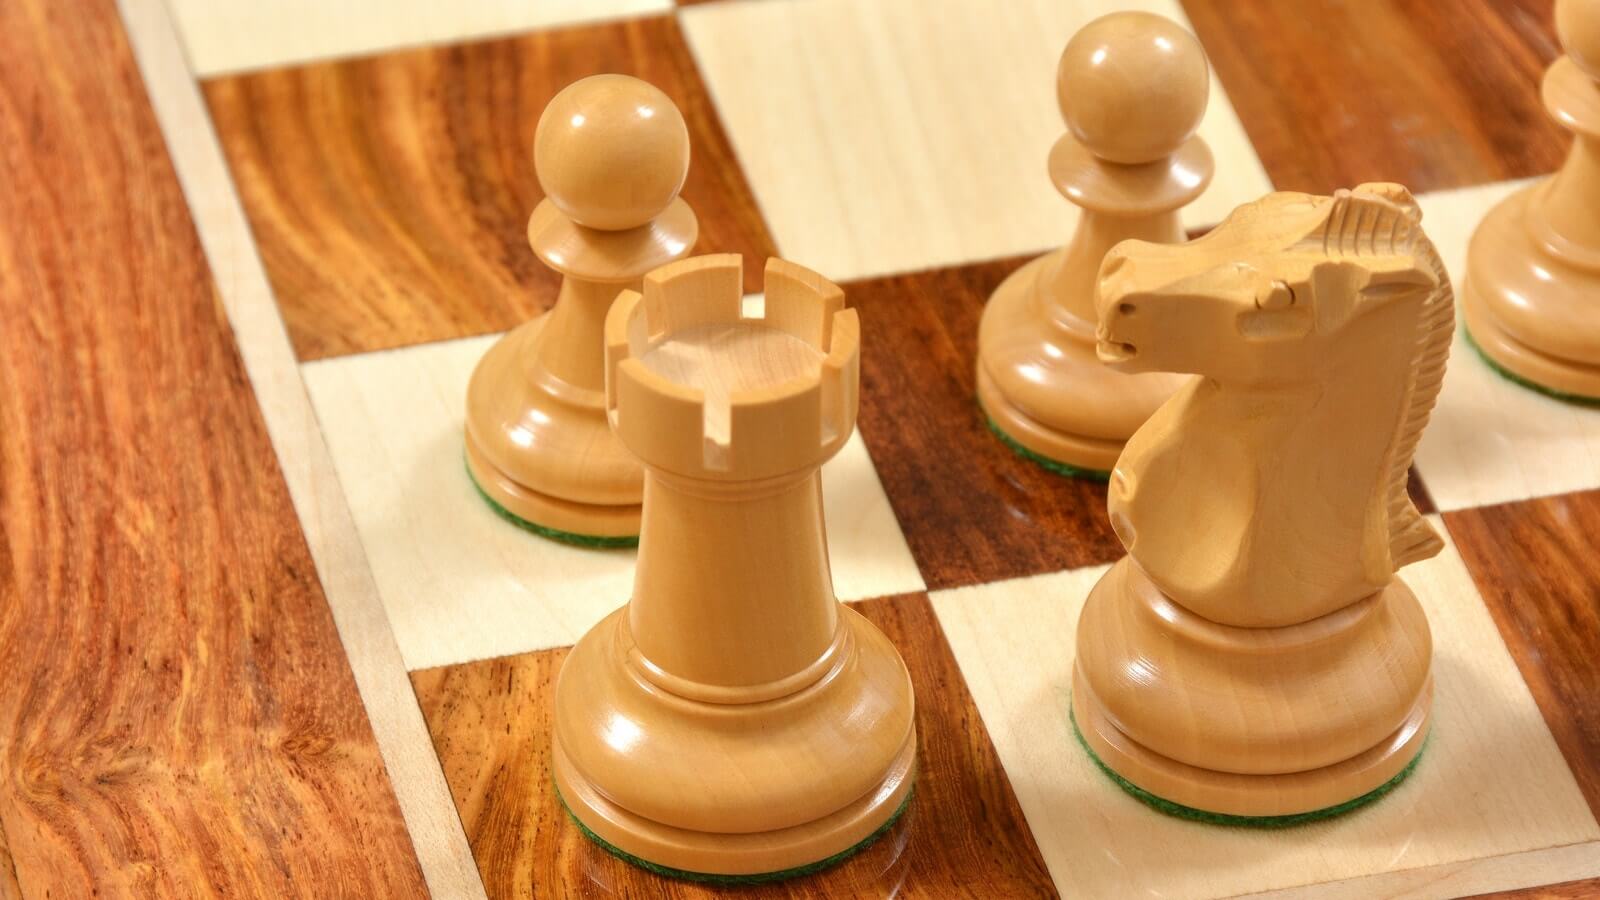 Schachkoffer von BETZOLD aus Holz